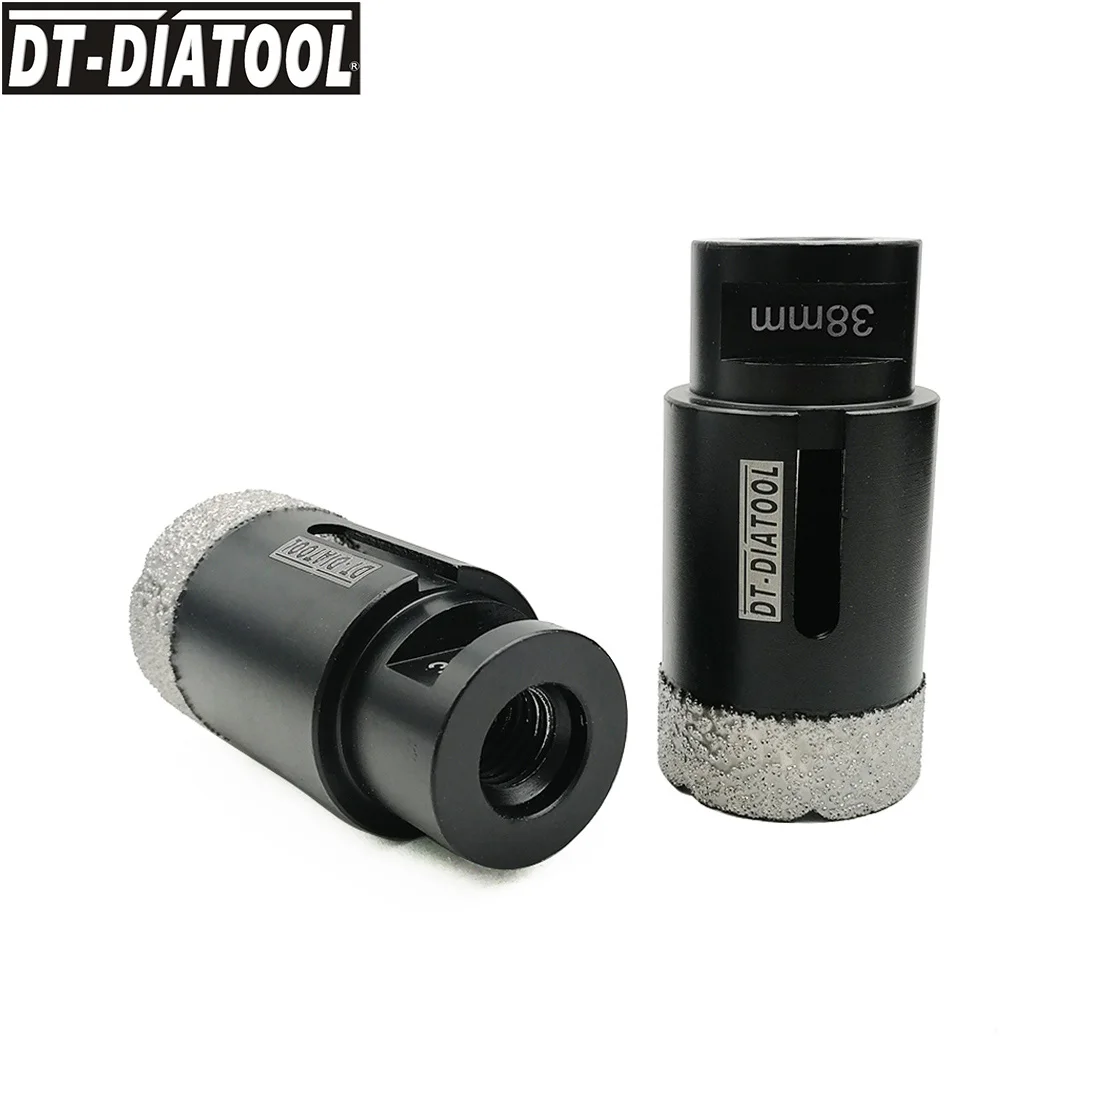 

DT-DIATOOL 2pcs M14 Dia 38mm Vacuum Brazed Diamond Dry Drill Core Bits Porcelain Tile Hole Saw Granite Marble Stone Drilling Bit